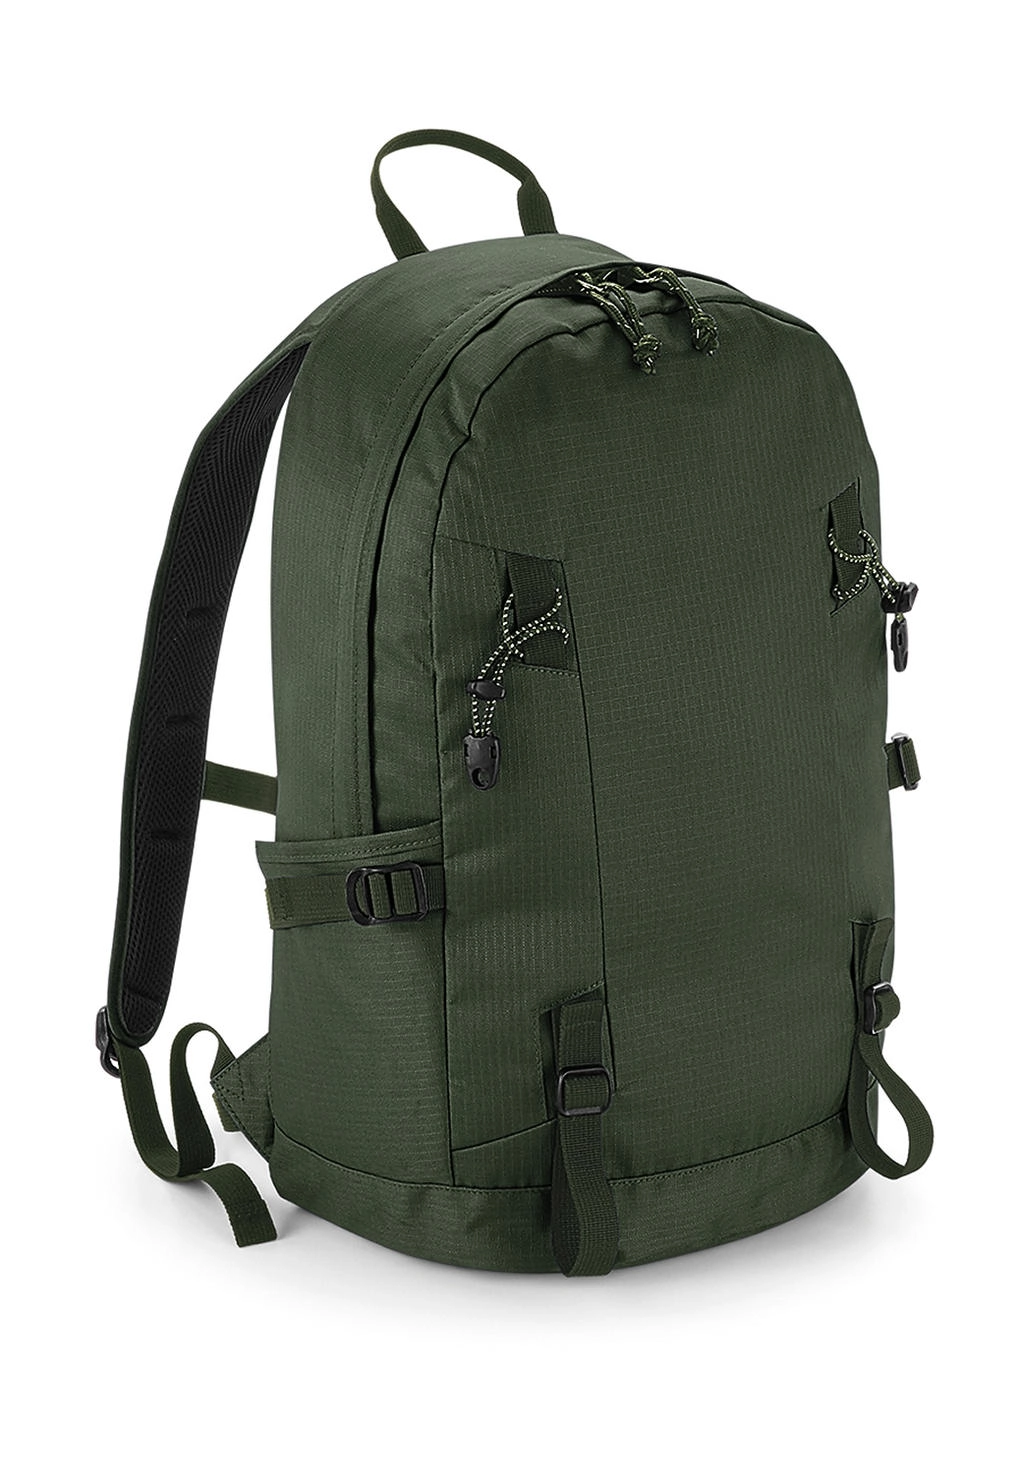 Everyday Outdoor 20L Backpack zum Besticken und Bedrucken in der Farbe Olive Green mit Ihren Logo, Schriftzug oder Motiv.